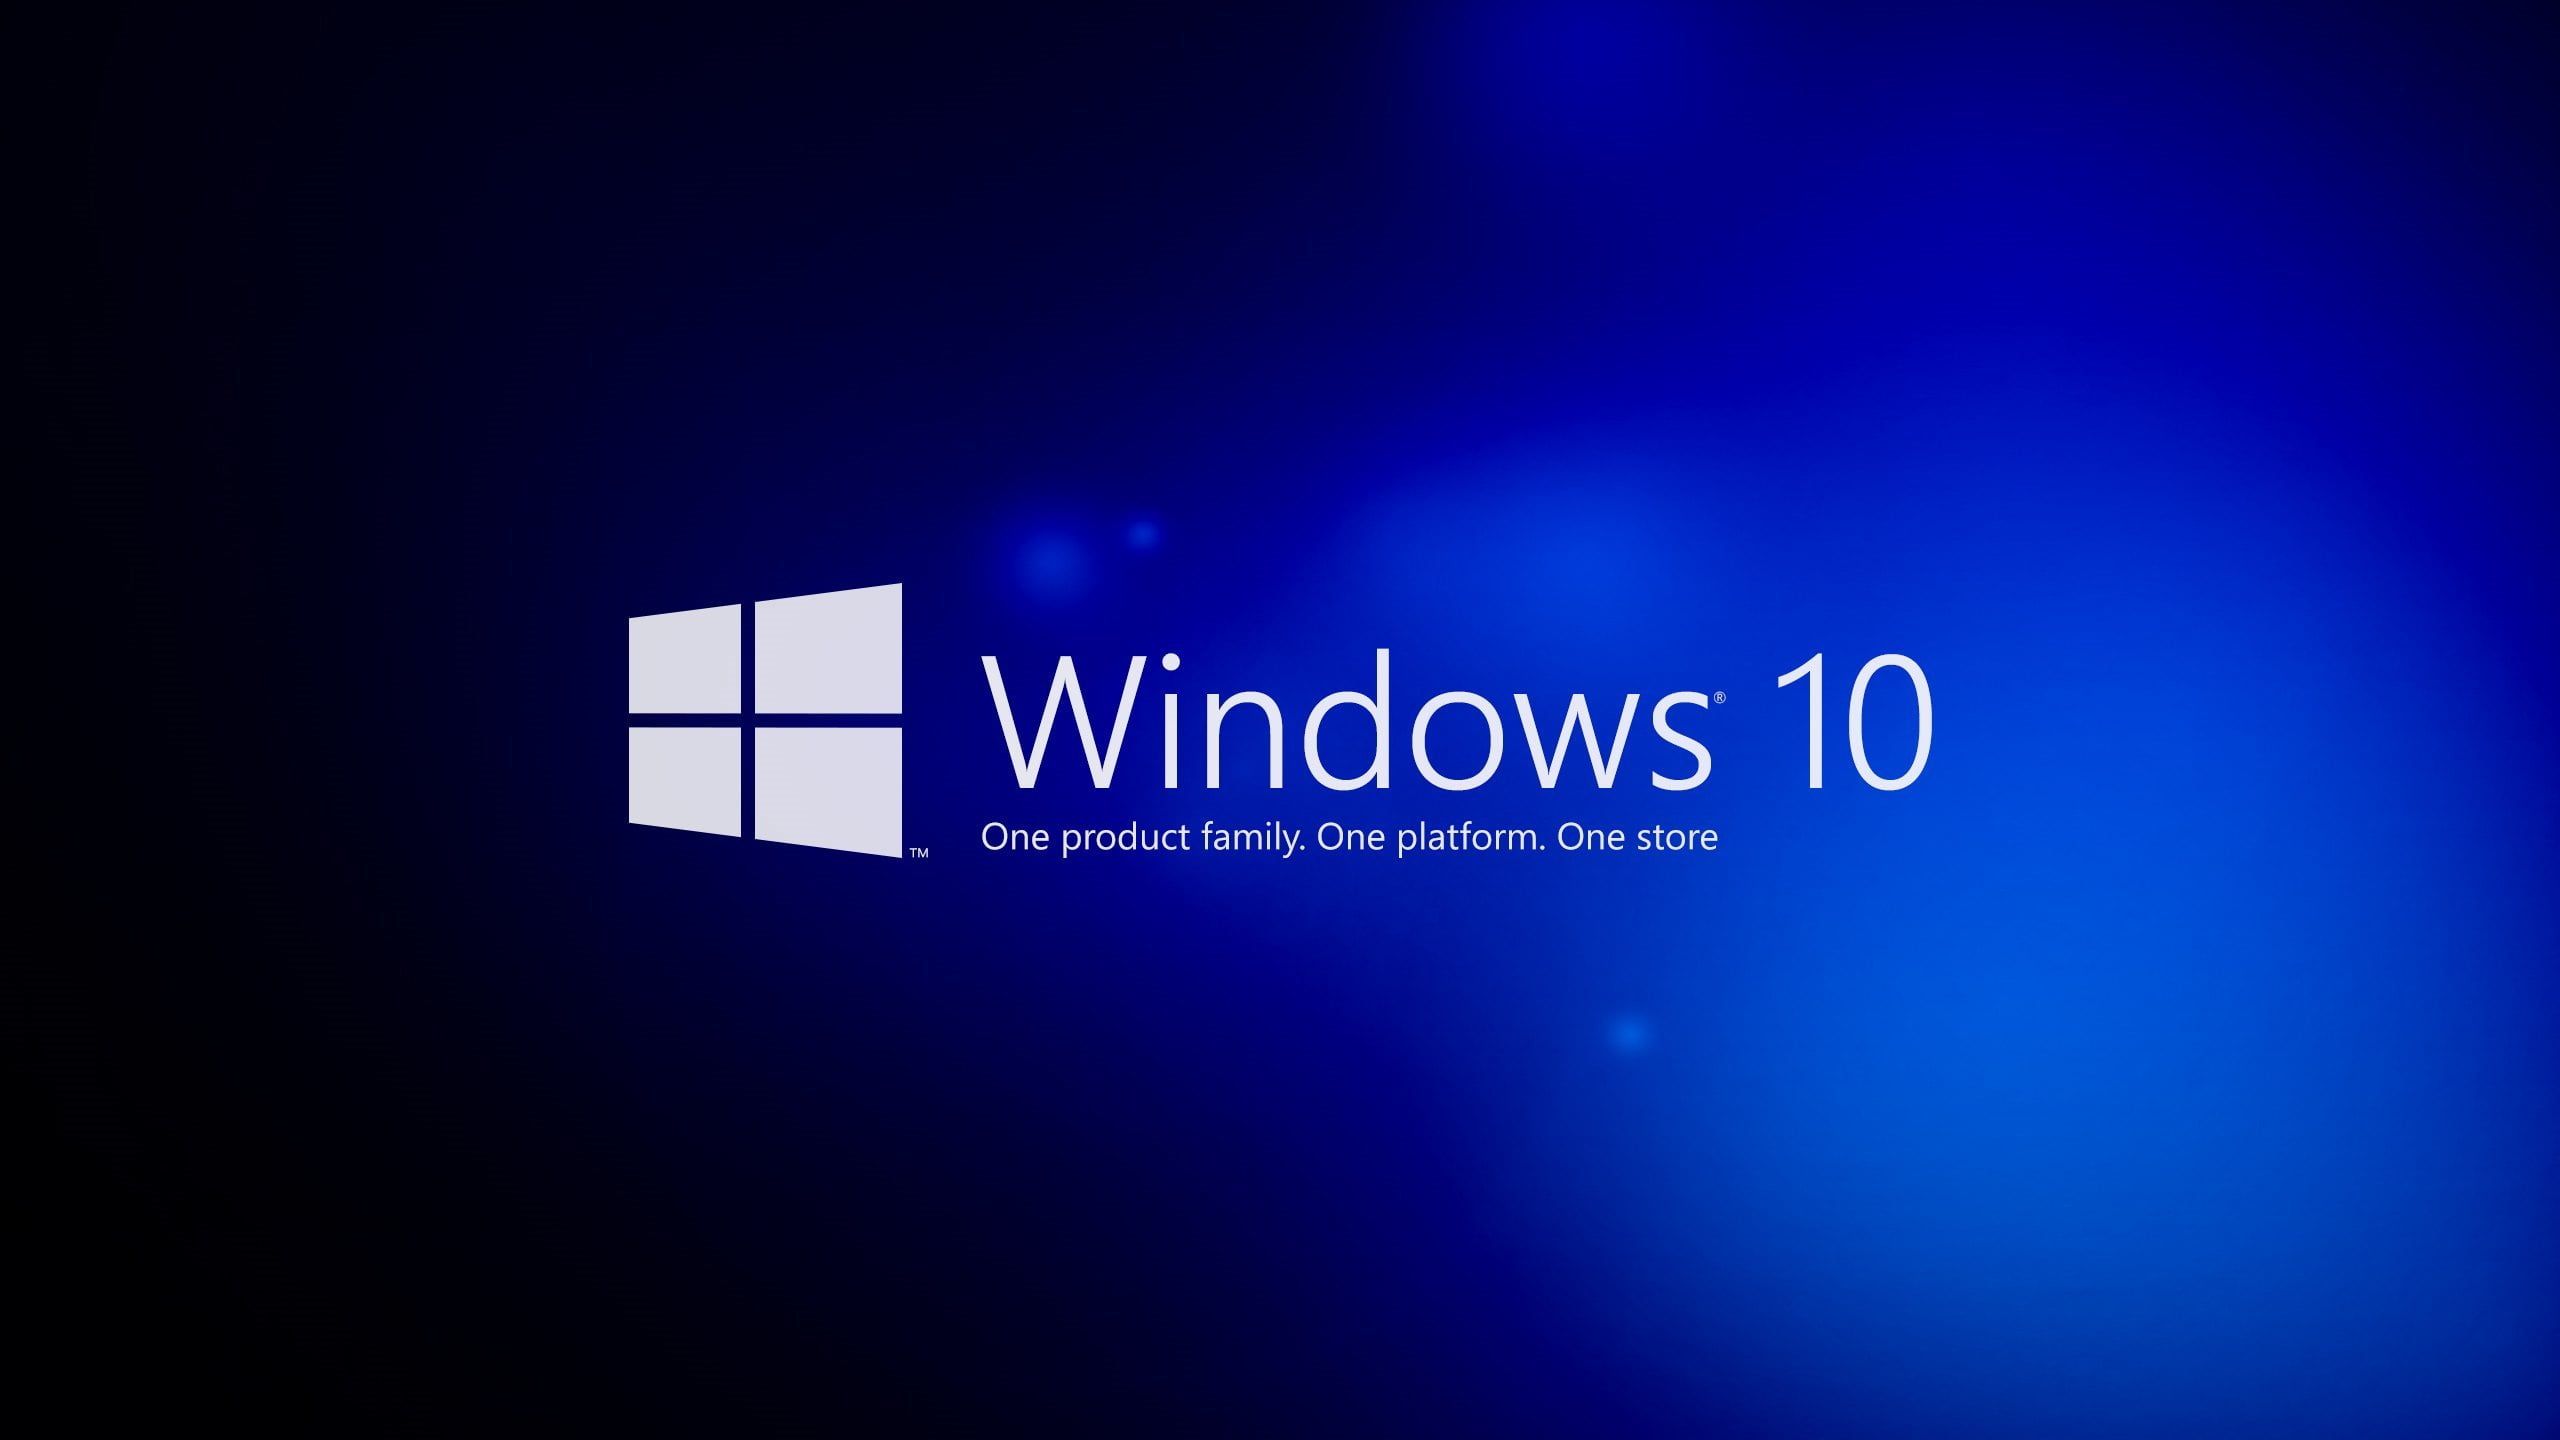 Trải nghiệm bộ sưu tập hình nền Windows 10 Blue sẽ đem đến cho bạn một không gian làm việc mới mẻ, ngọt ngào và thư giãn hơn. Những biểu tượng, hình ảnh và màu sắc sẽ thúc đẩy trí tưởng tượng của bạn và giúp bạn tập trung tốt hơn vào công việc của mình. Bạn có muốn khám phá ngay bây giờ không?